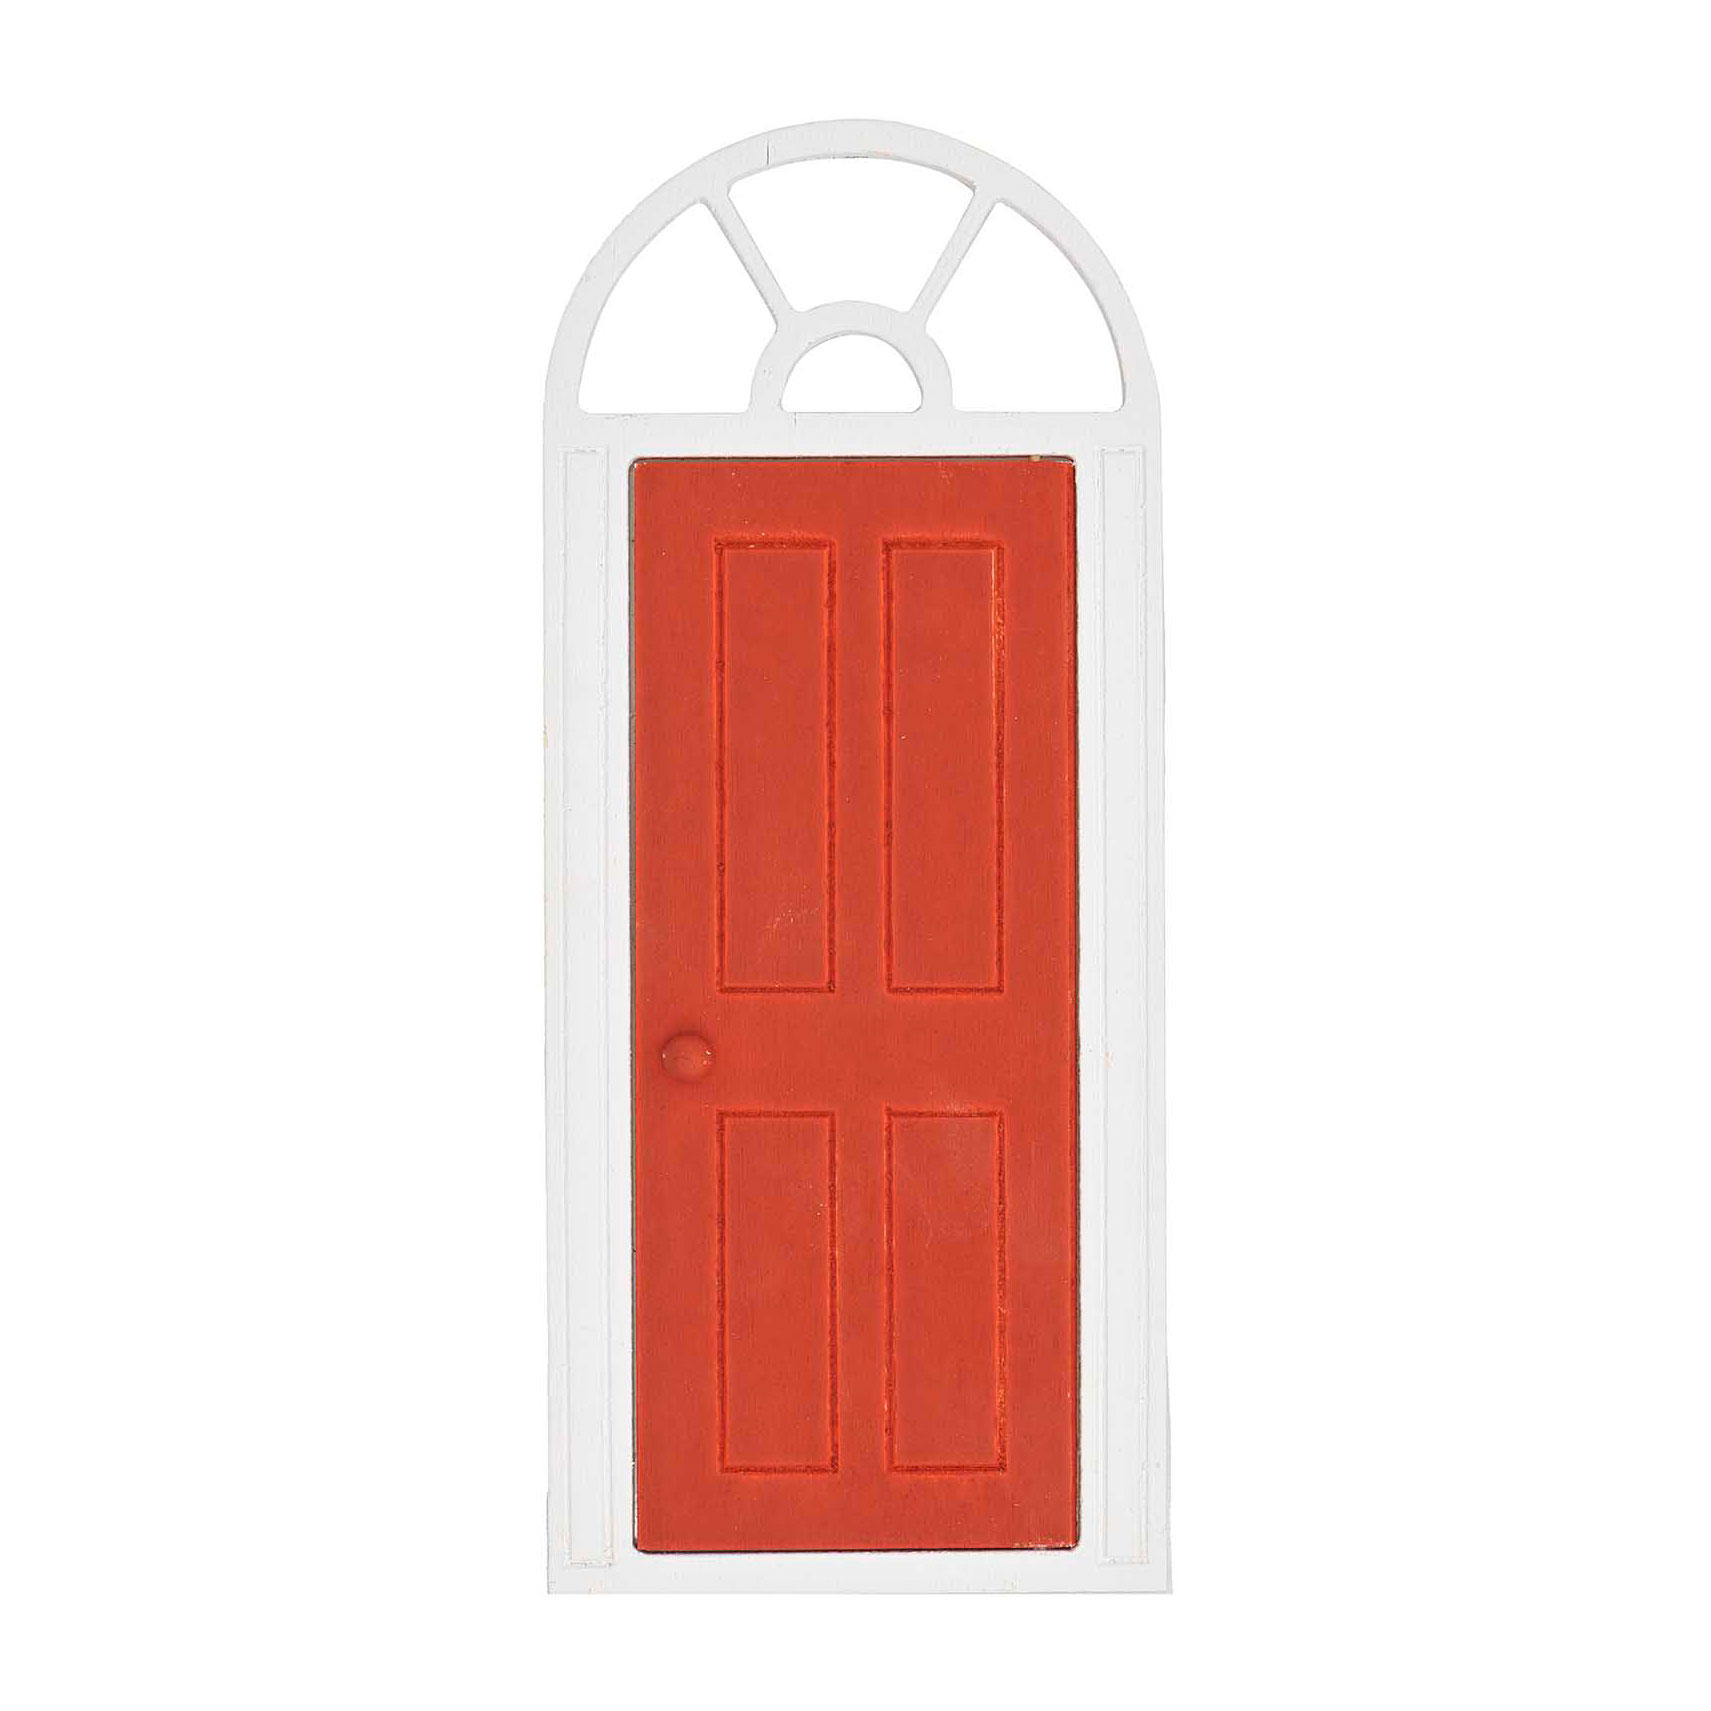 Rundbogentür mit Fenster - Rot & Weiß